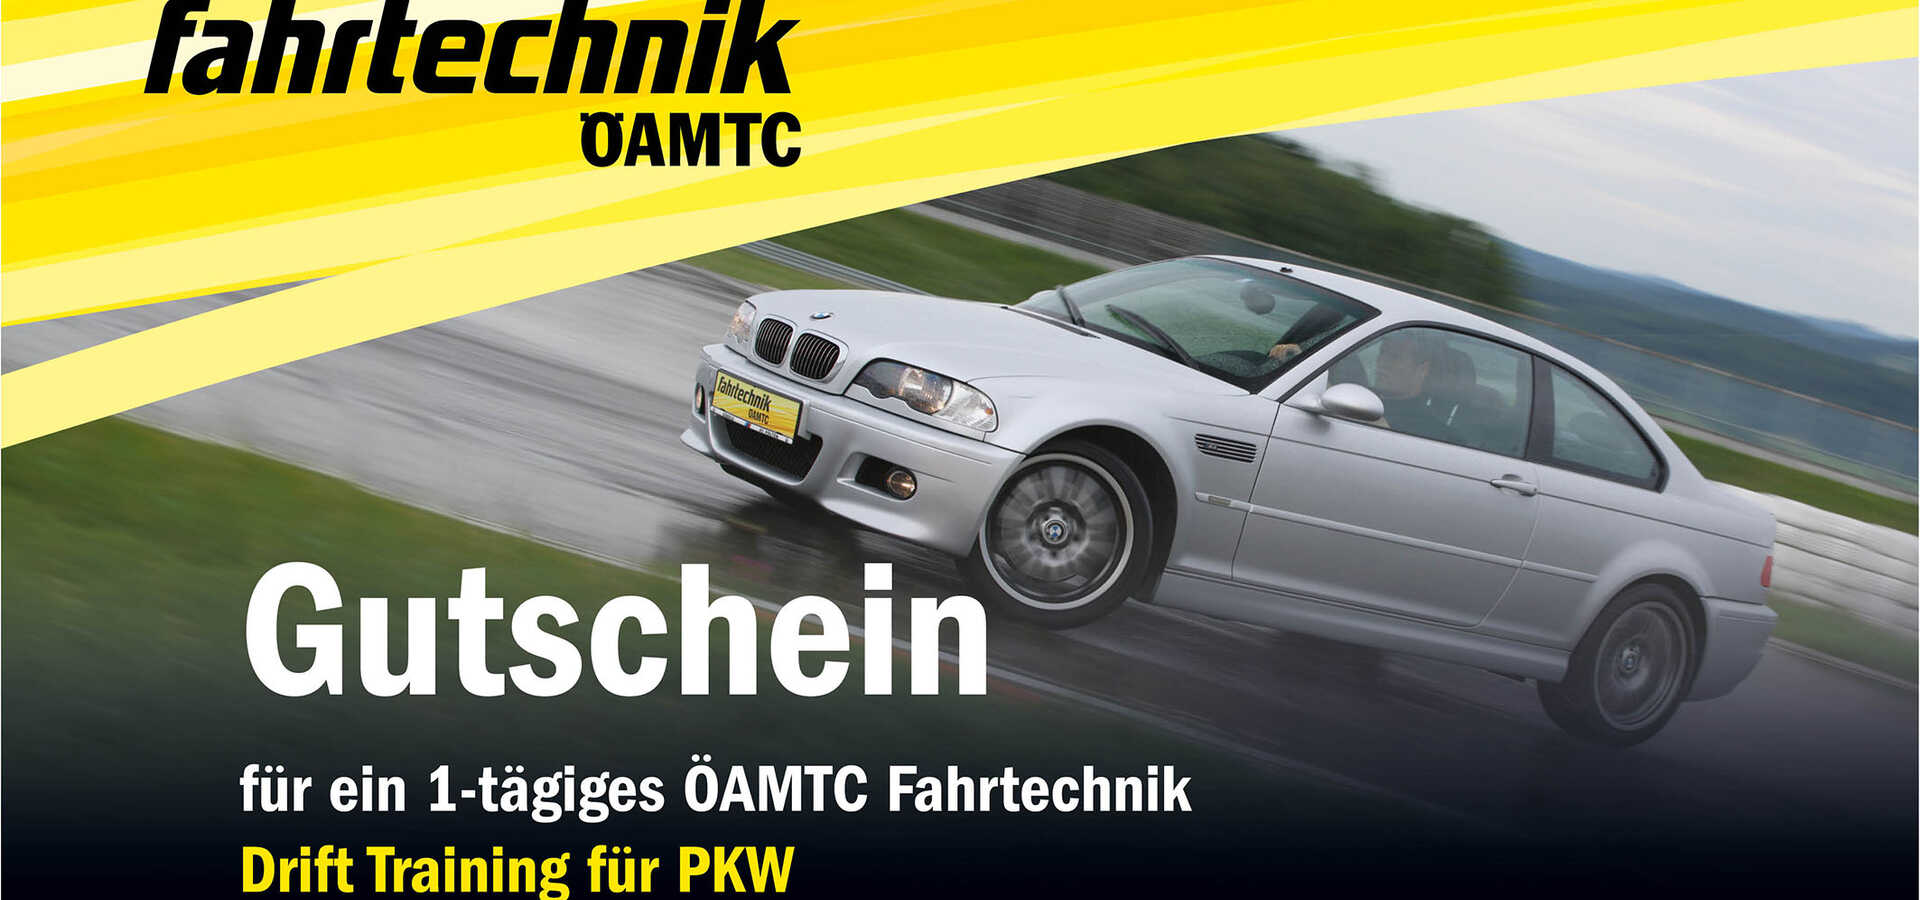 ÖAMTC Fahrtechnik Gutschein Drift Training ÖAMTC Fahrtechnik / https://www.oeamtc.at/fahrtechnik